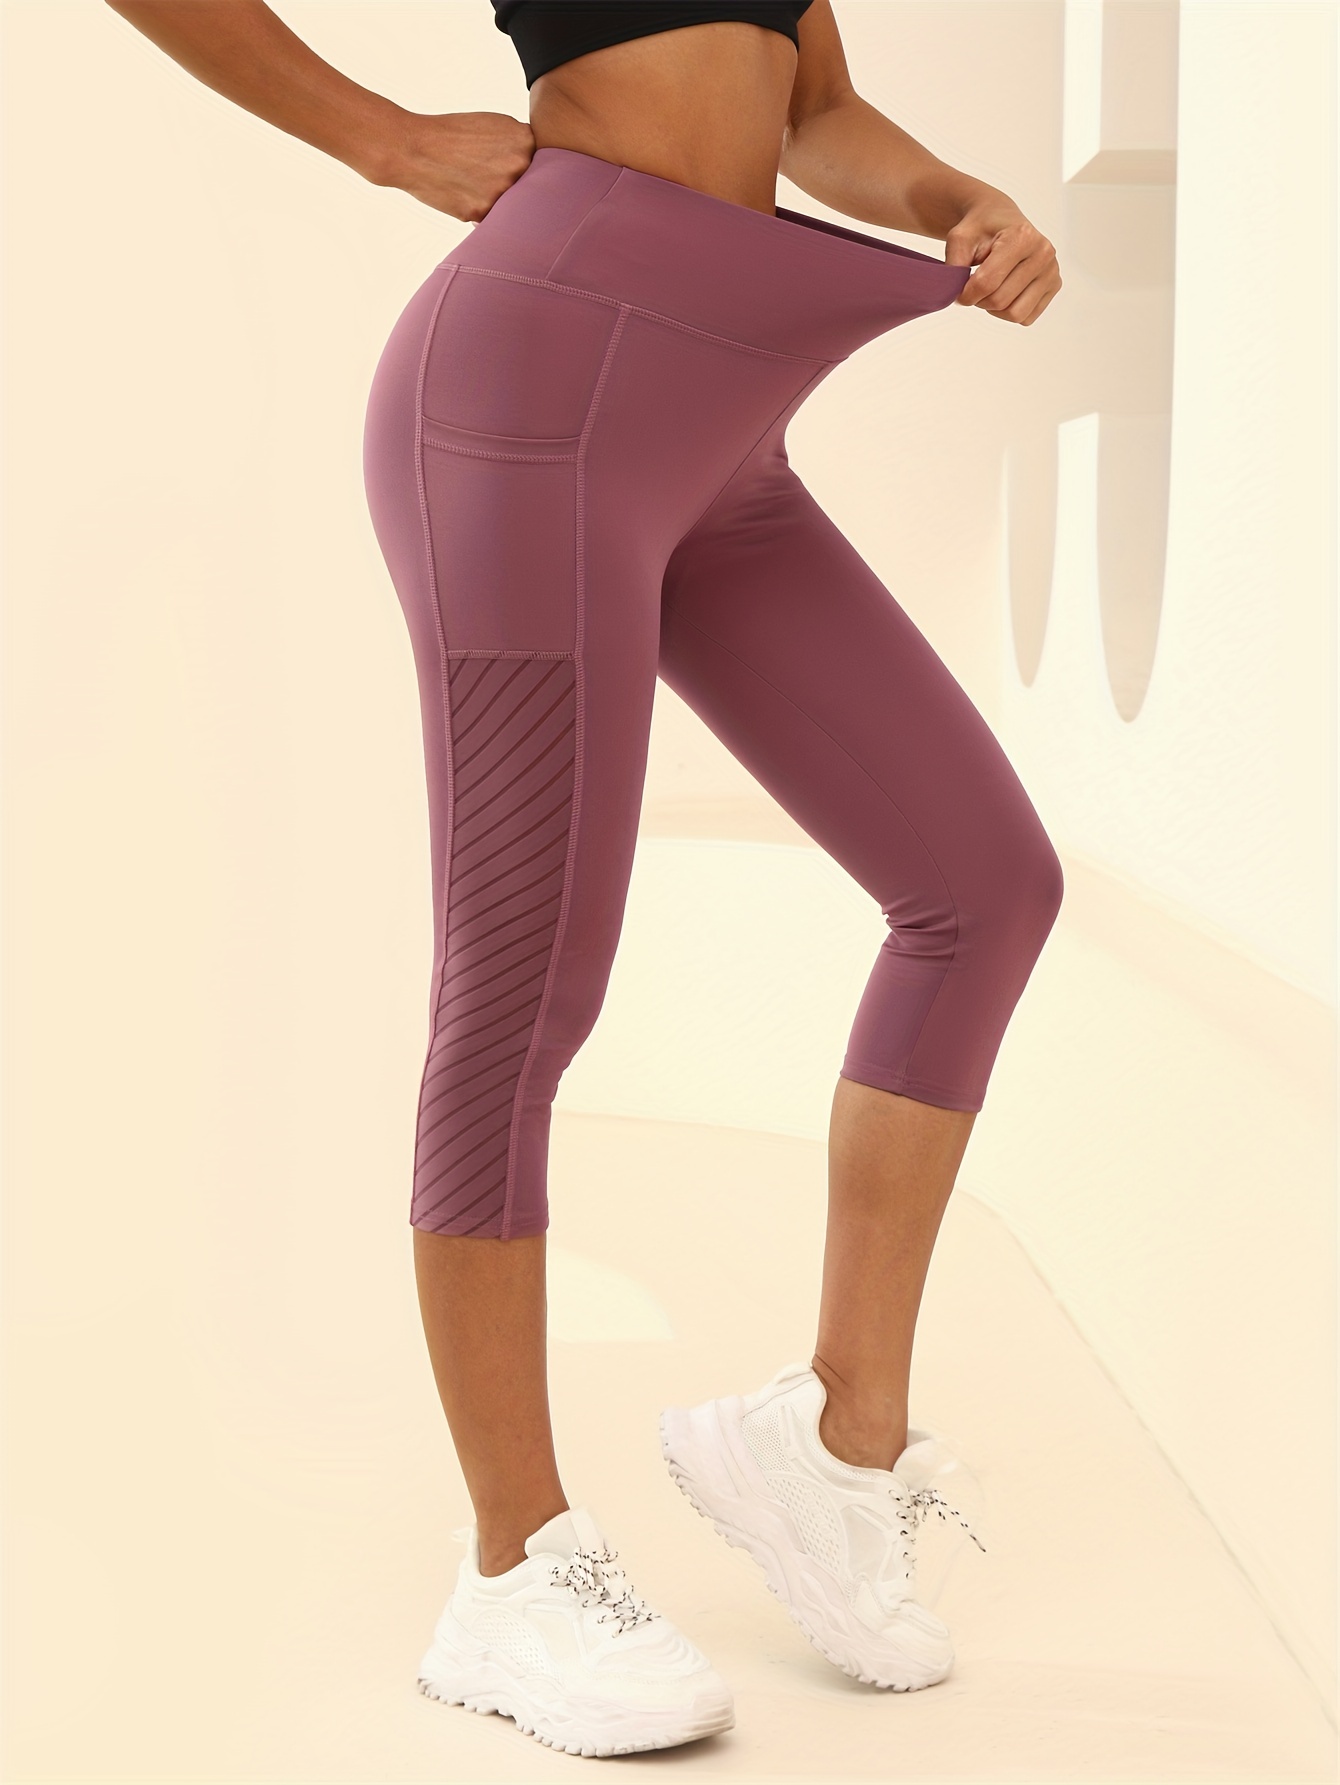 Apana Ladies Yoga Pants Small Leggings Length High Waisted Workout